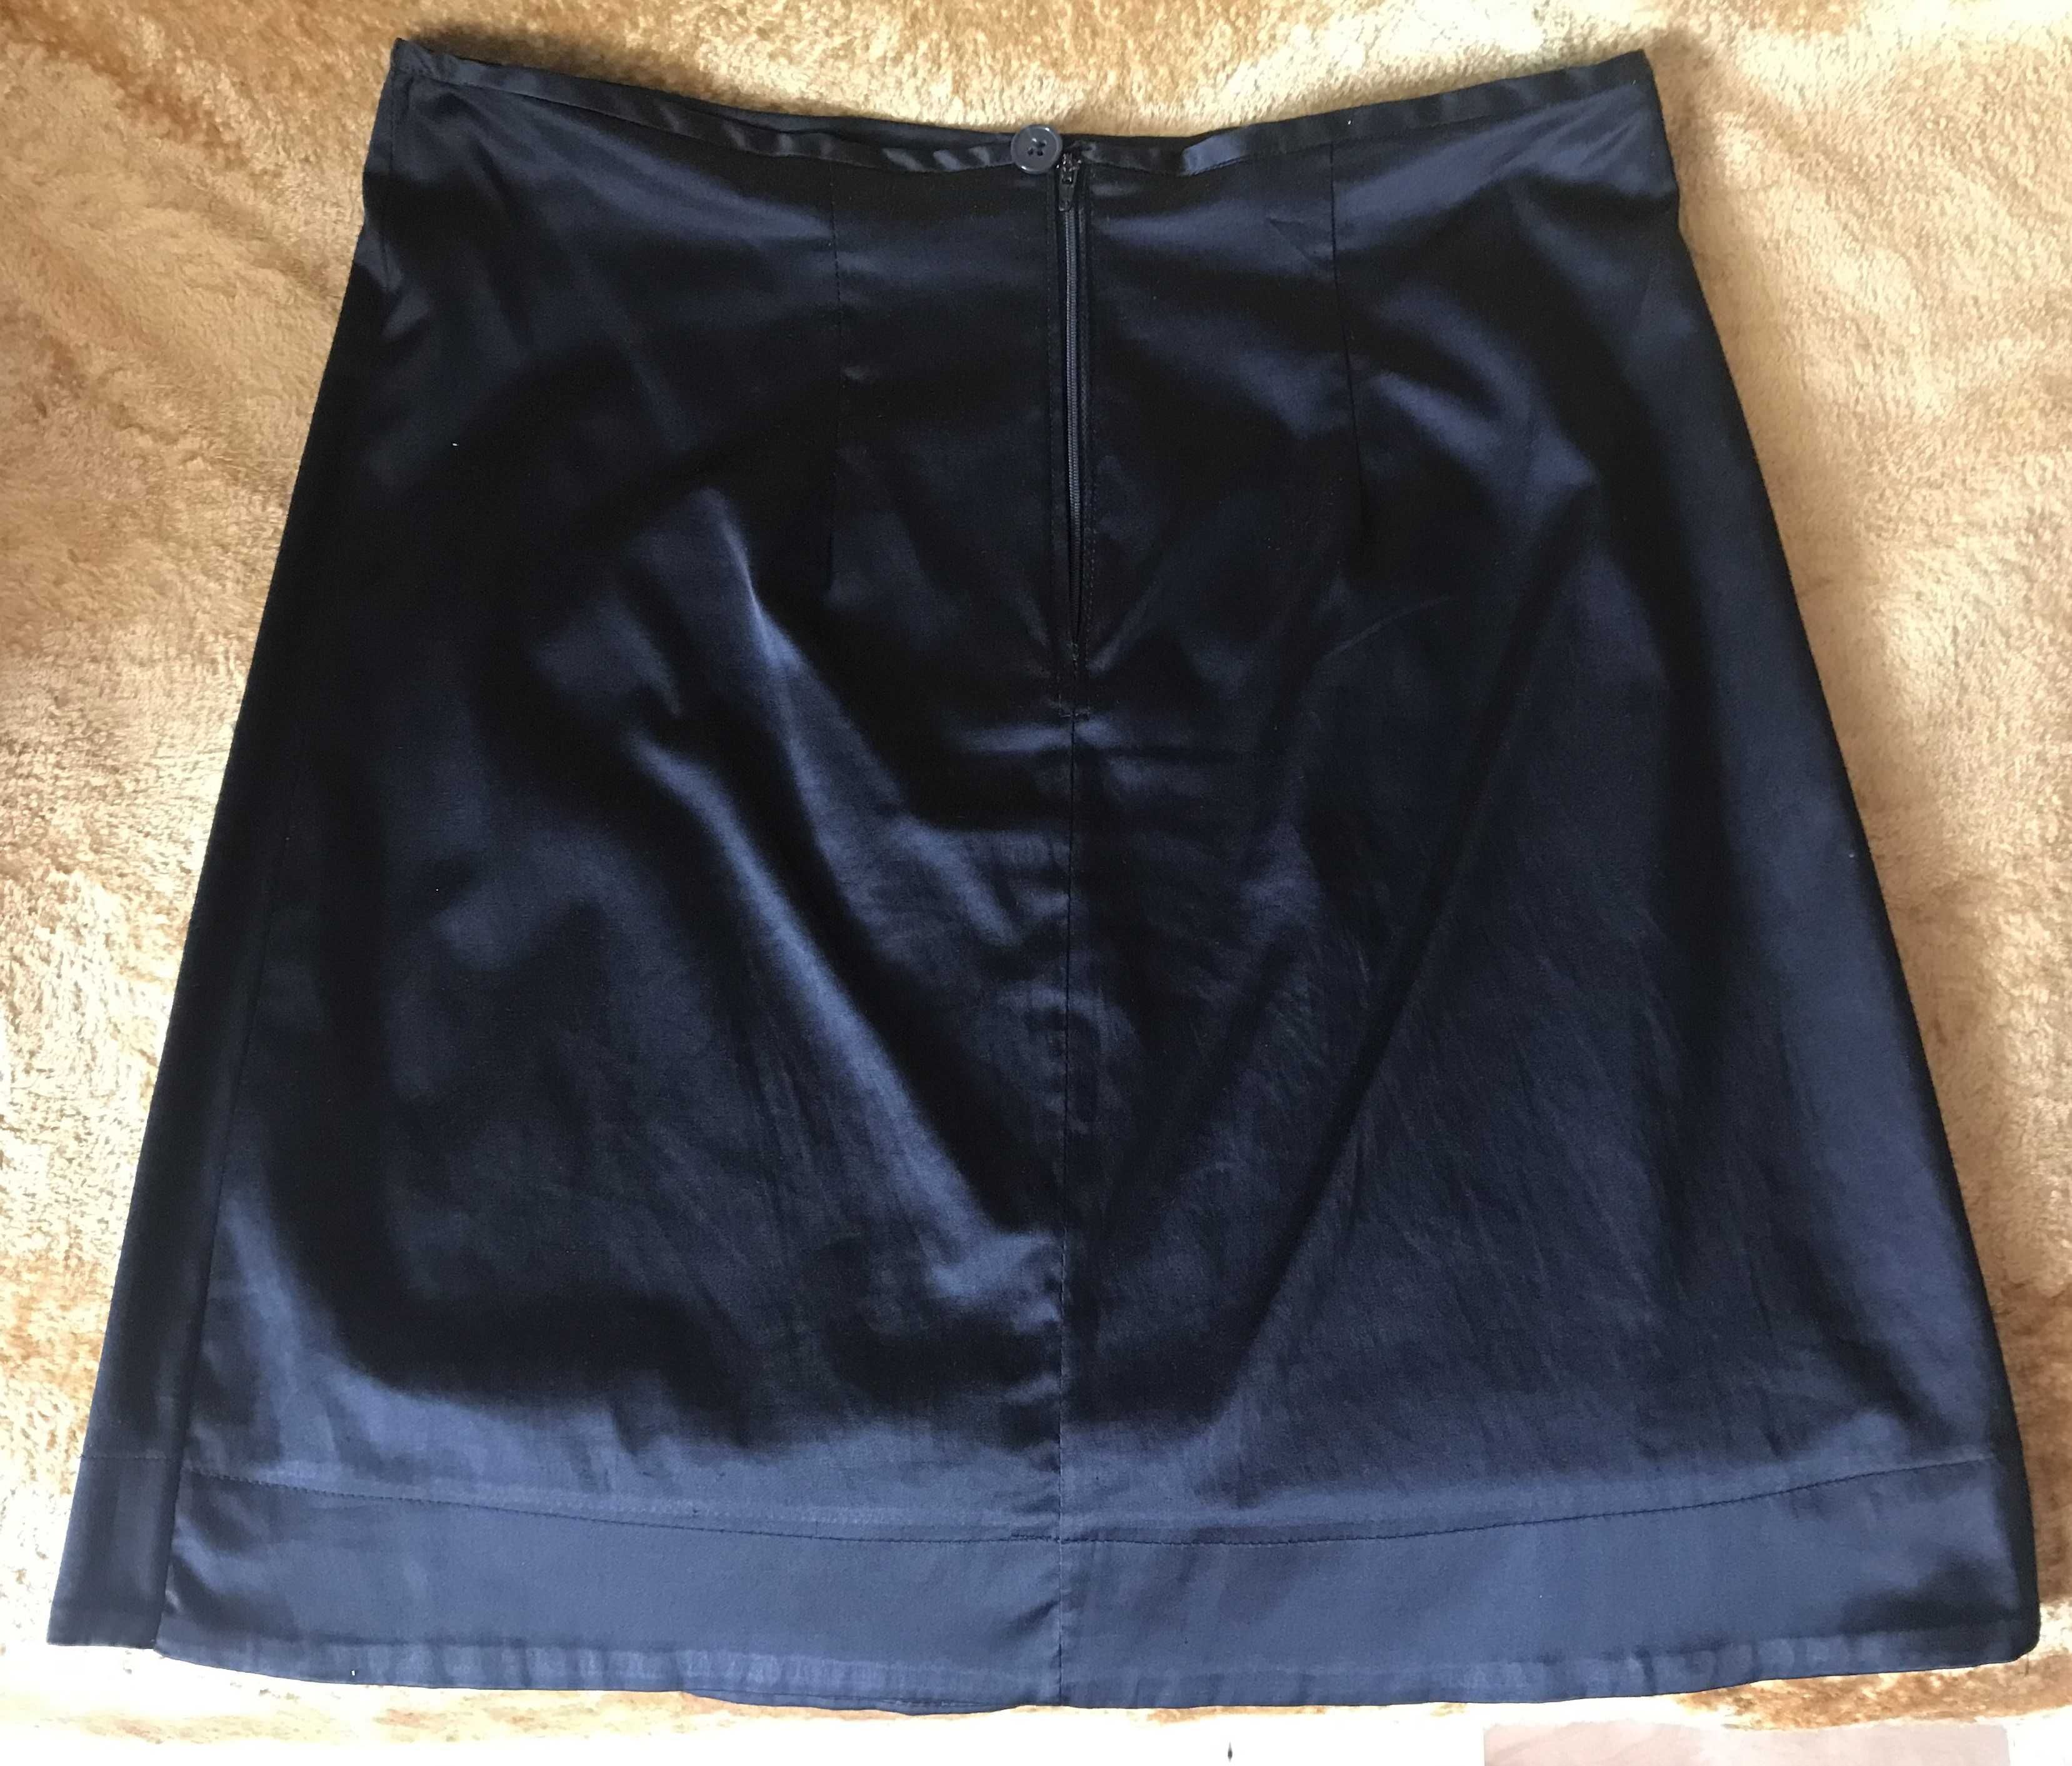 Krótka, czarna spódnica z połyskiem, rozmiar 42/44.